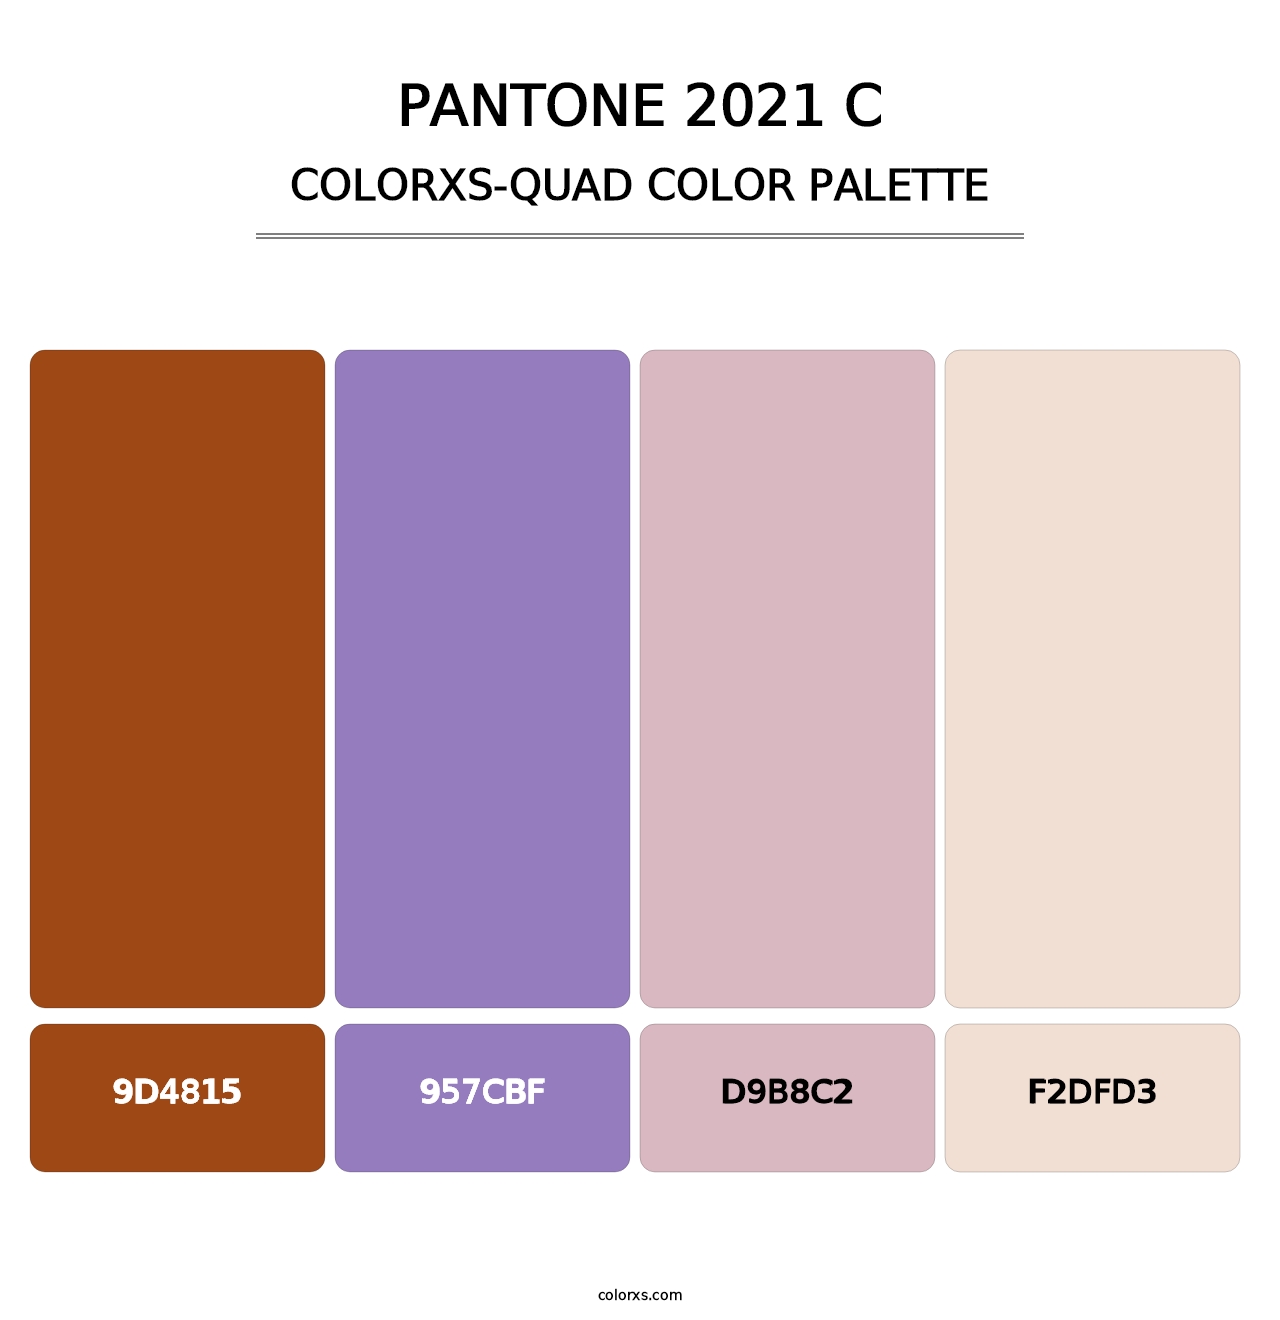 PANTONE 2021 C - Colorxs Quad Palette